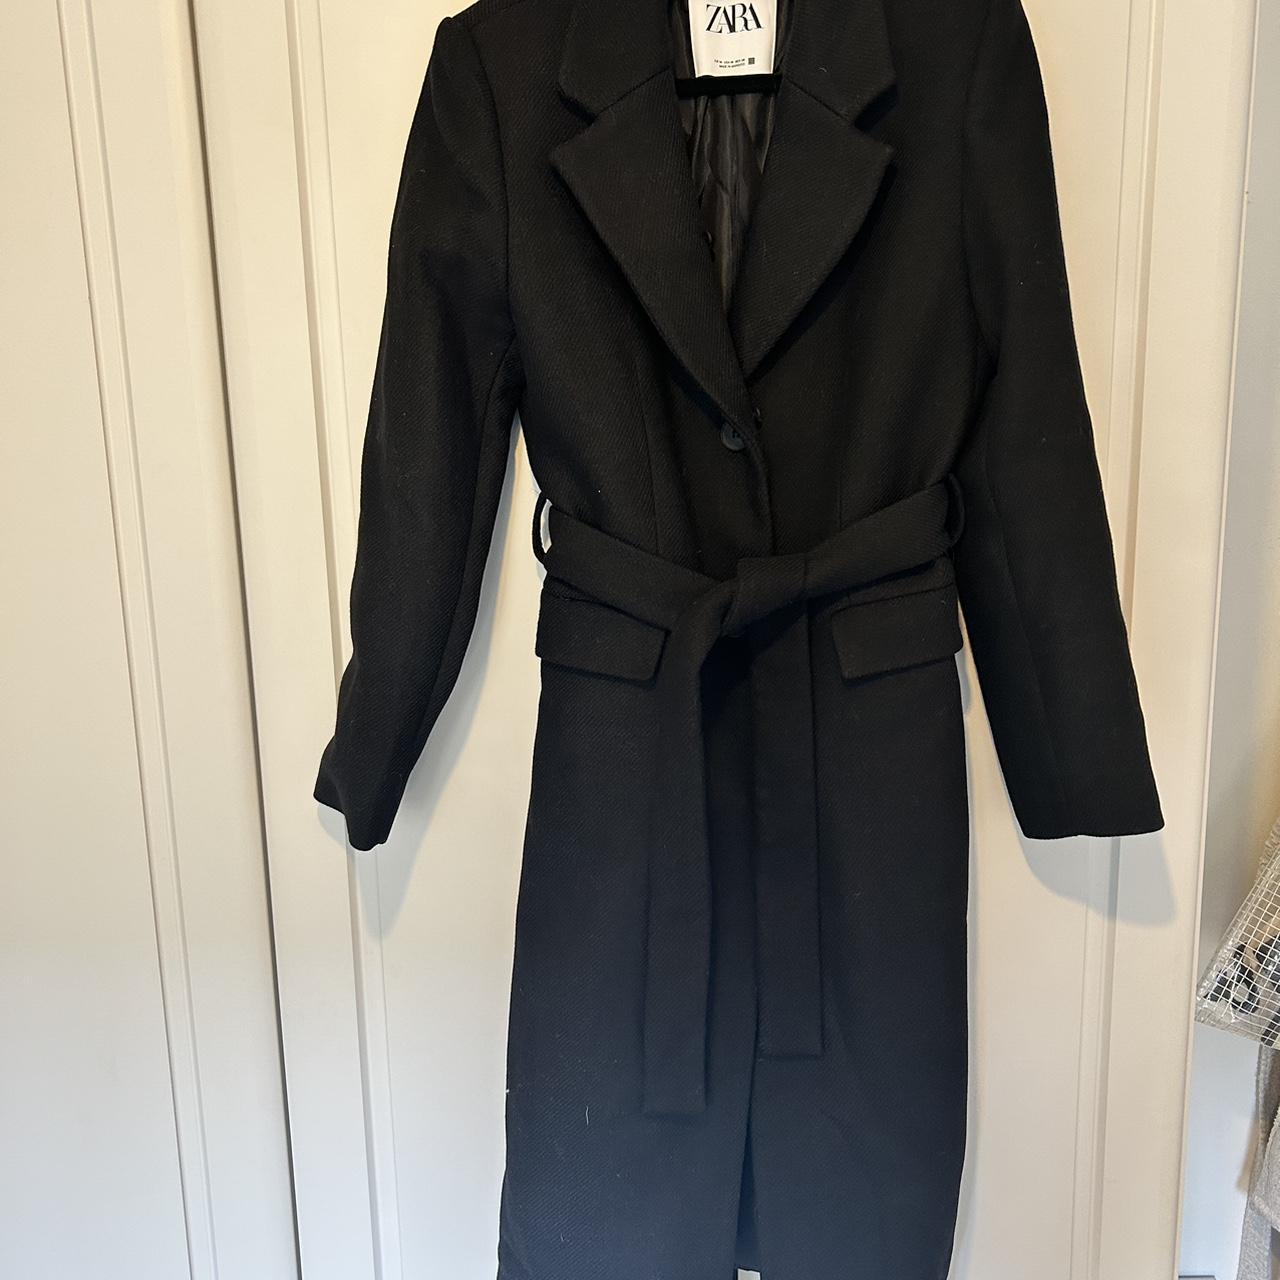 Zara black wool coat with belt. Size M. Ladies. RRP... - Depop